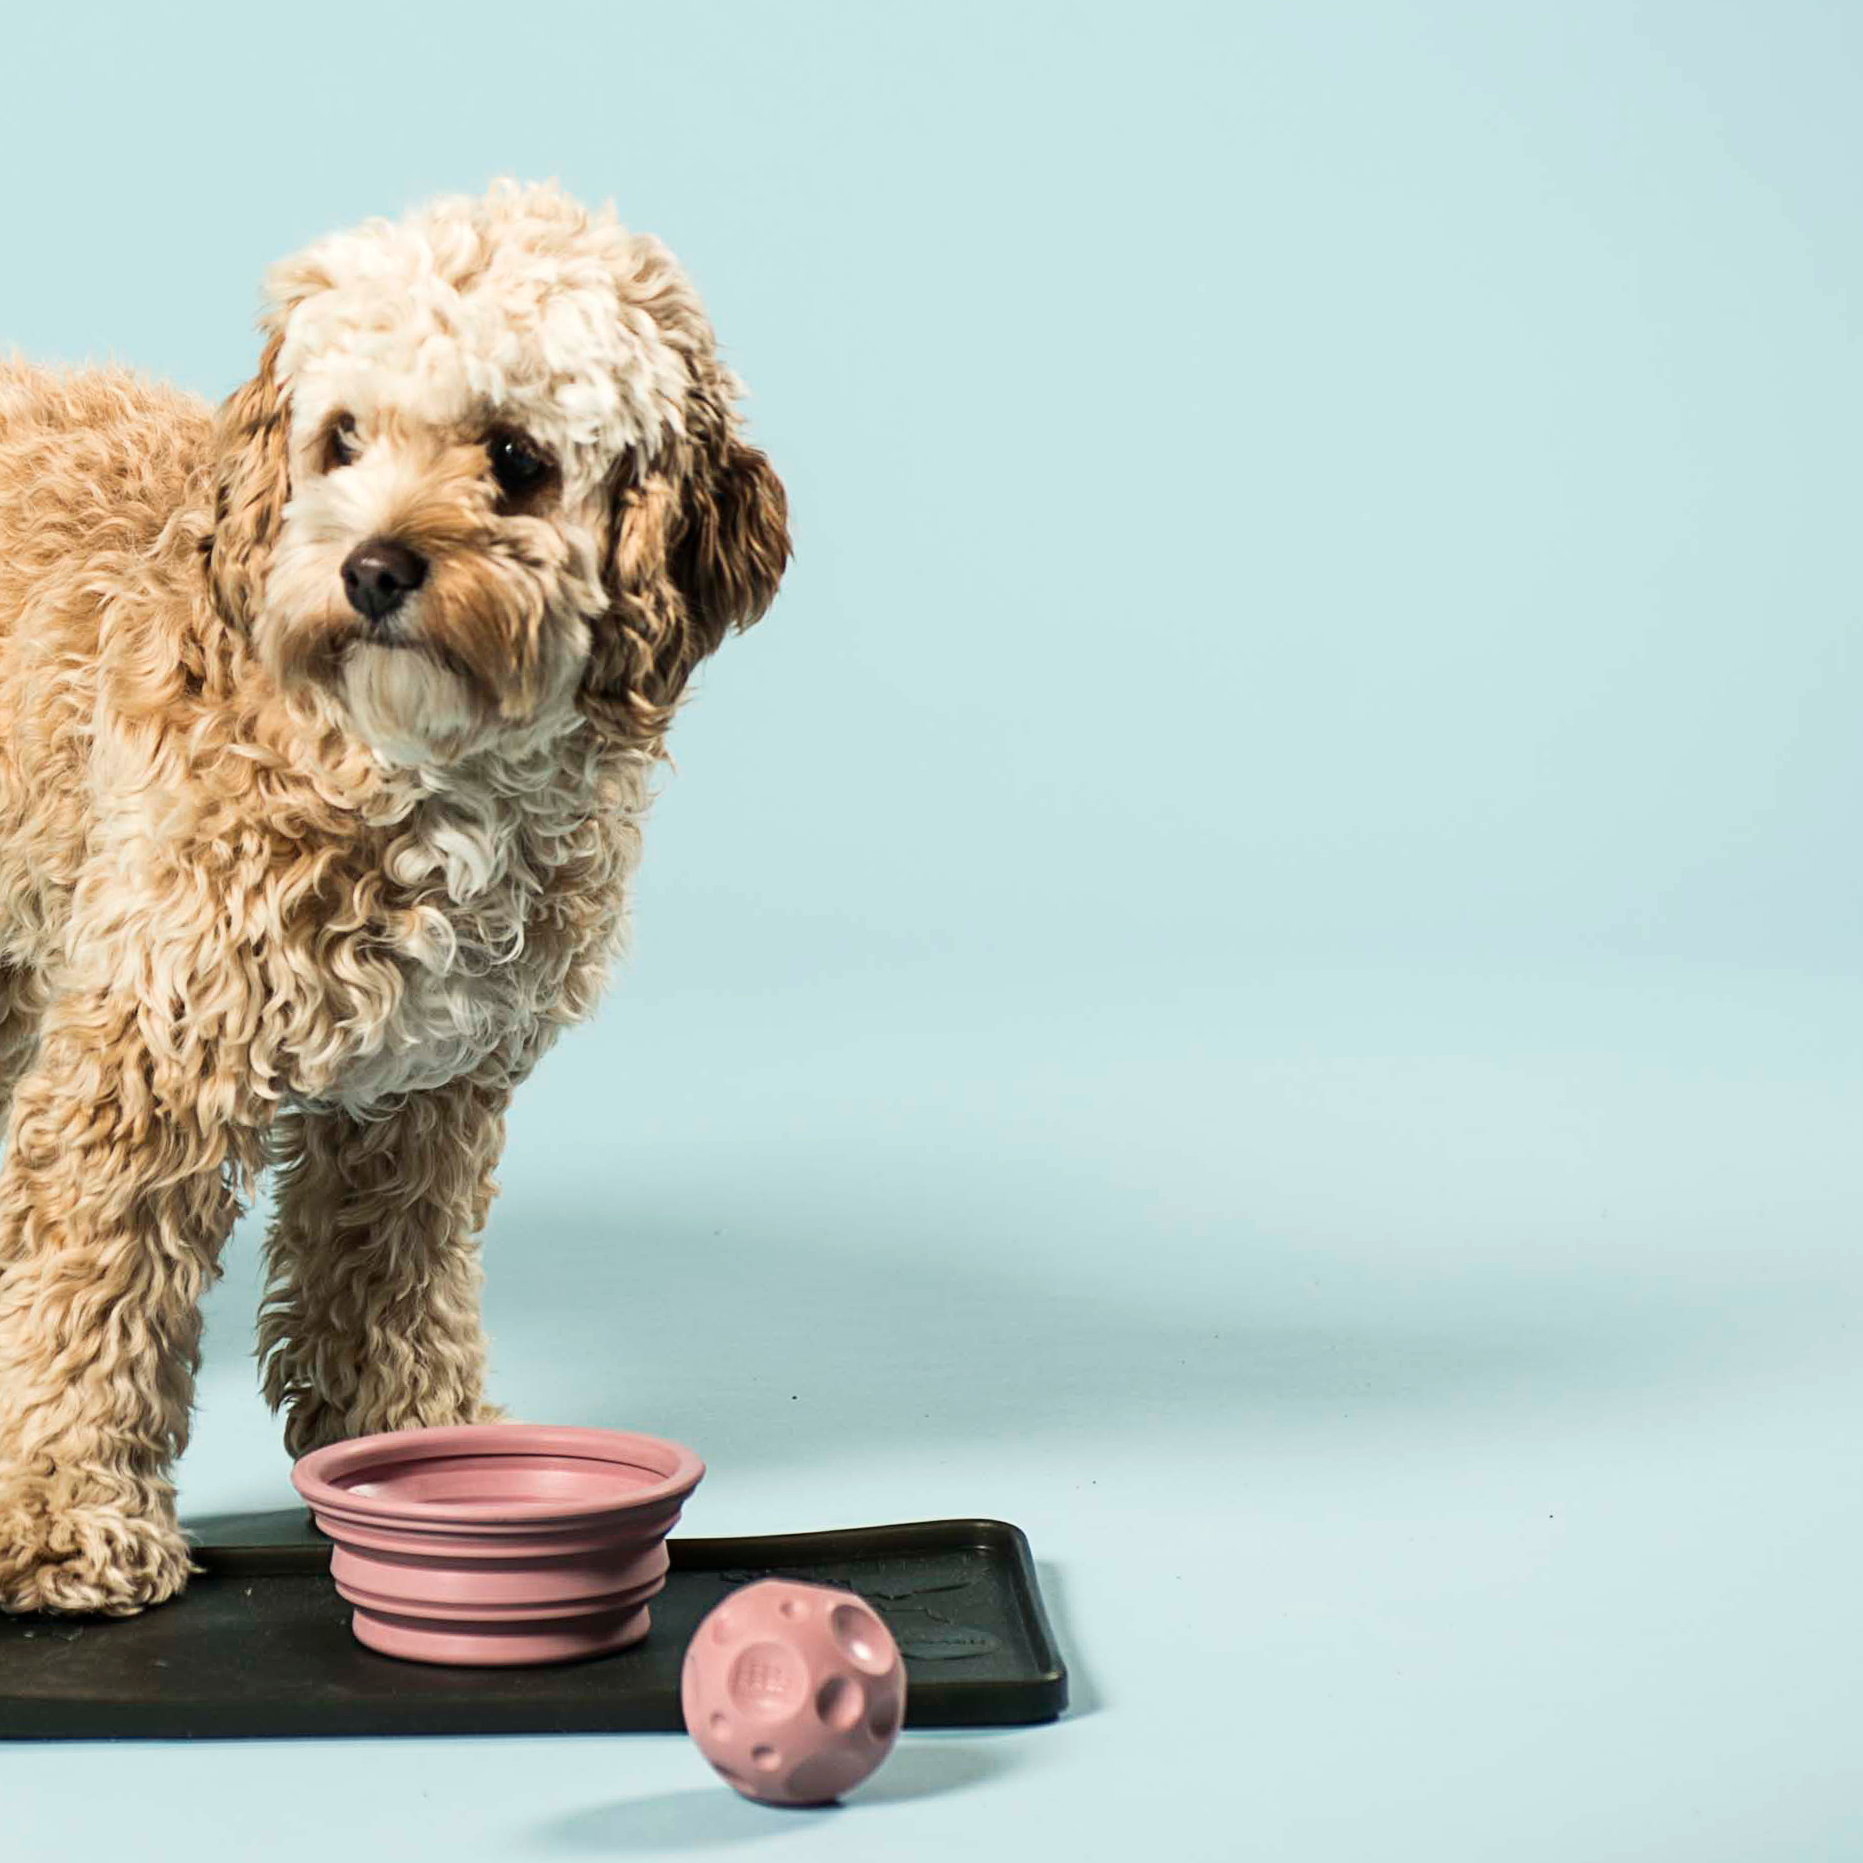 un câine se uită în depărtare și are lângă el un bol și o minge roz